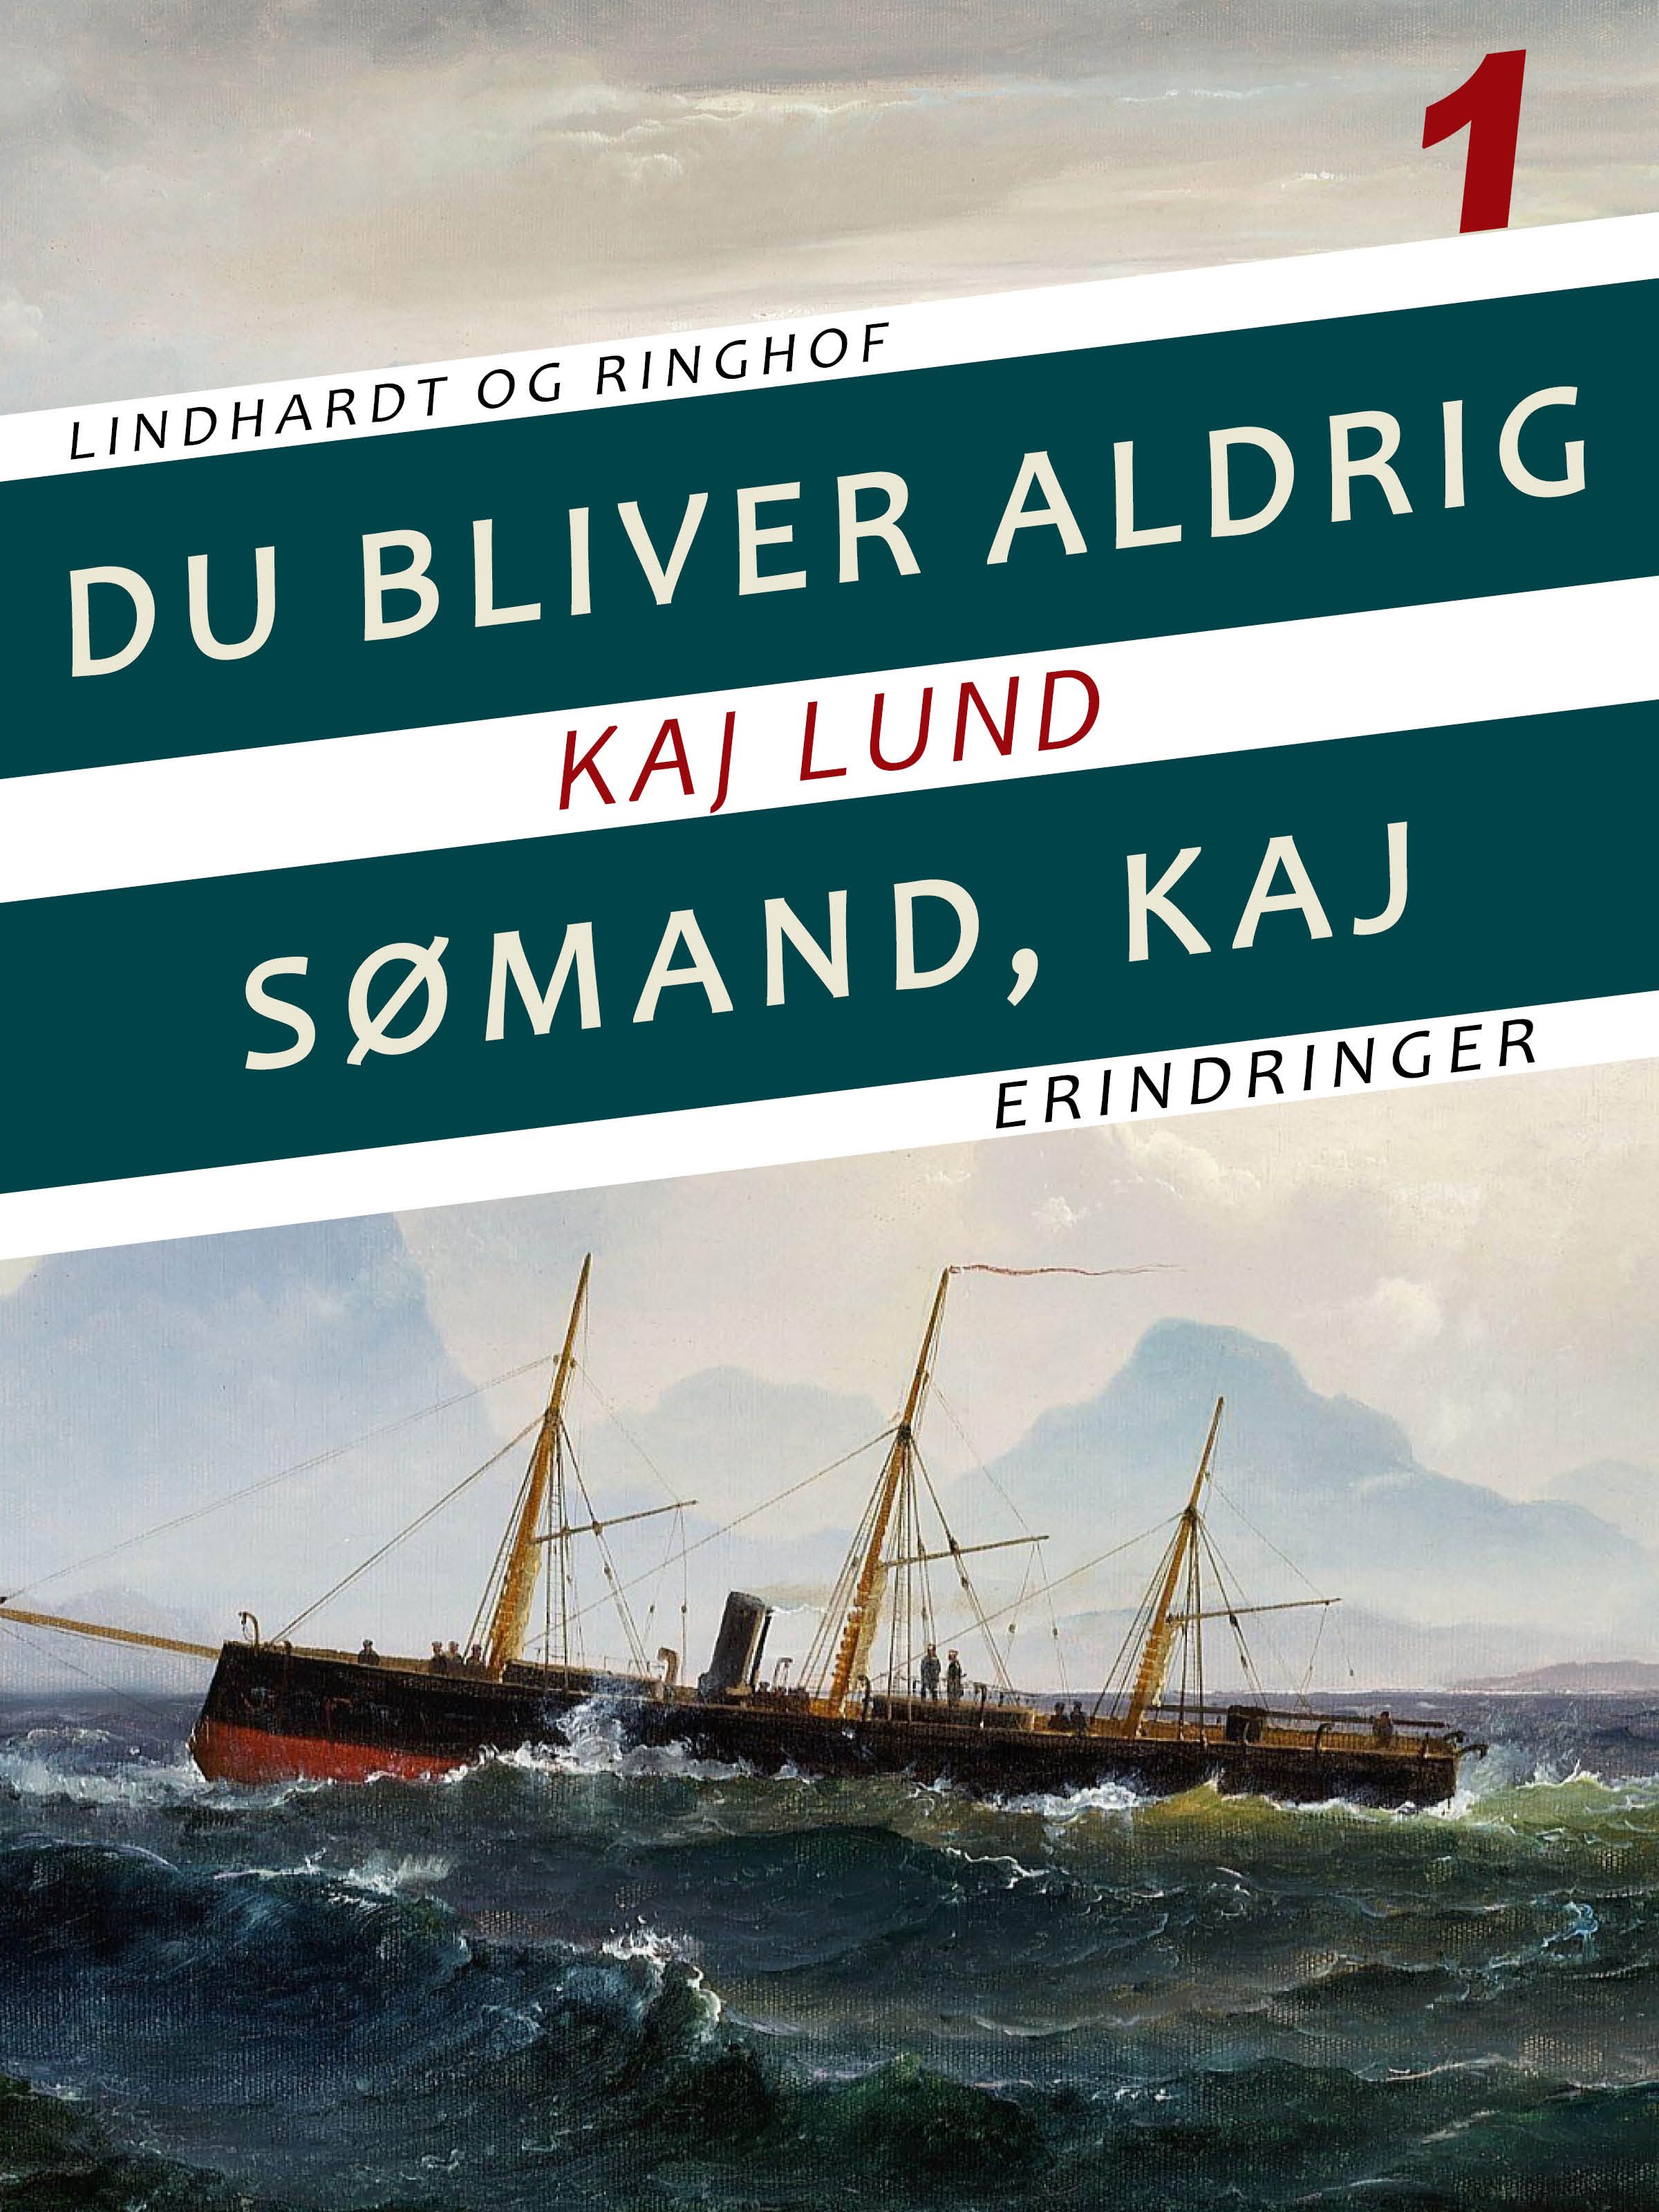 Du bliver aldrig sømand, Kaj, e-bok av Kaj Lund